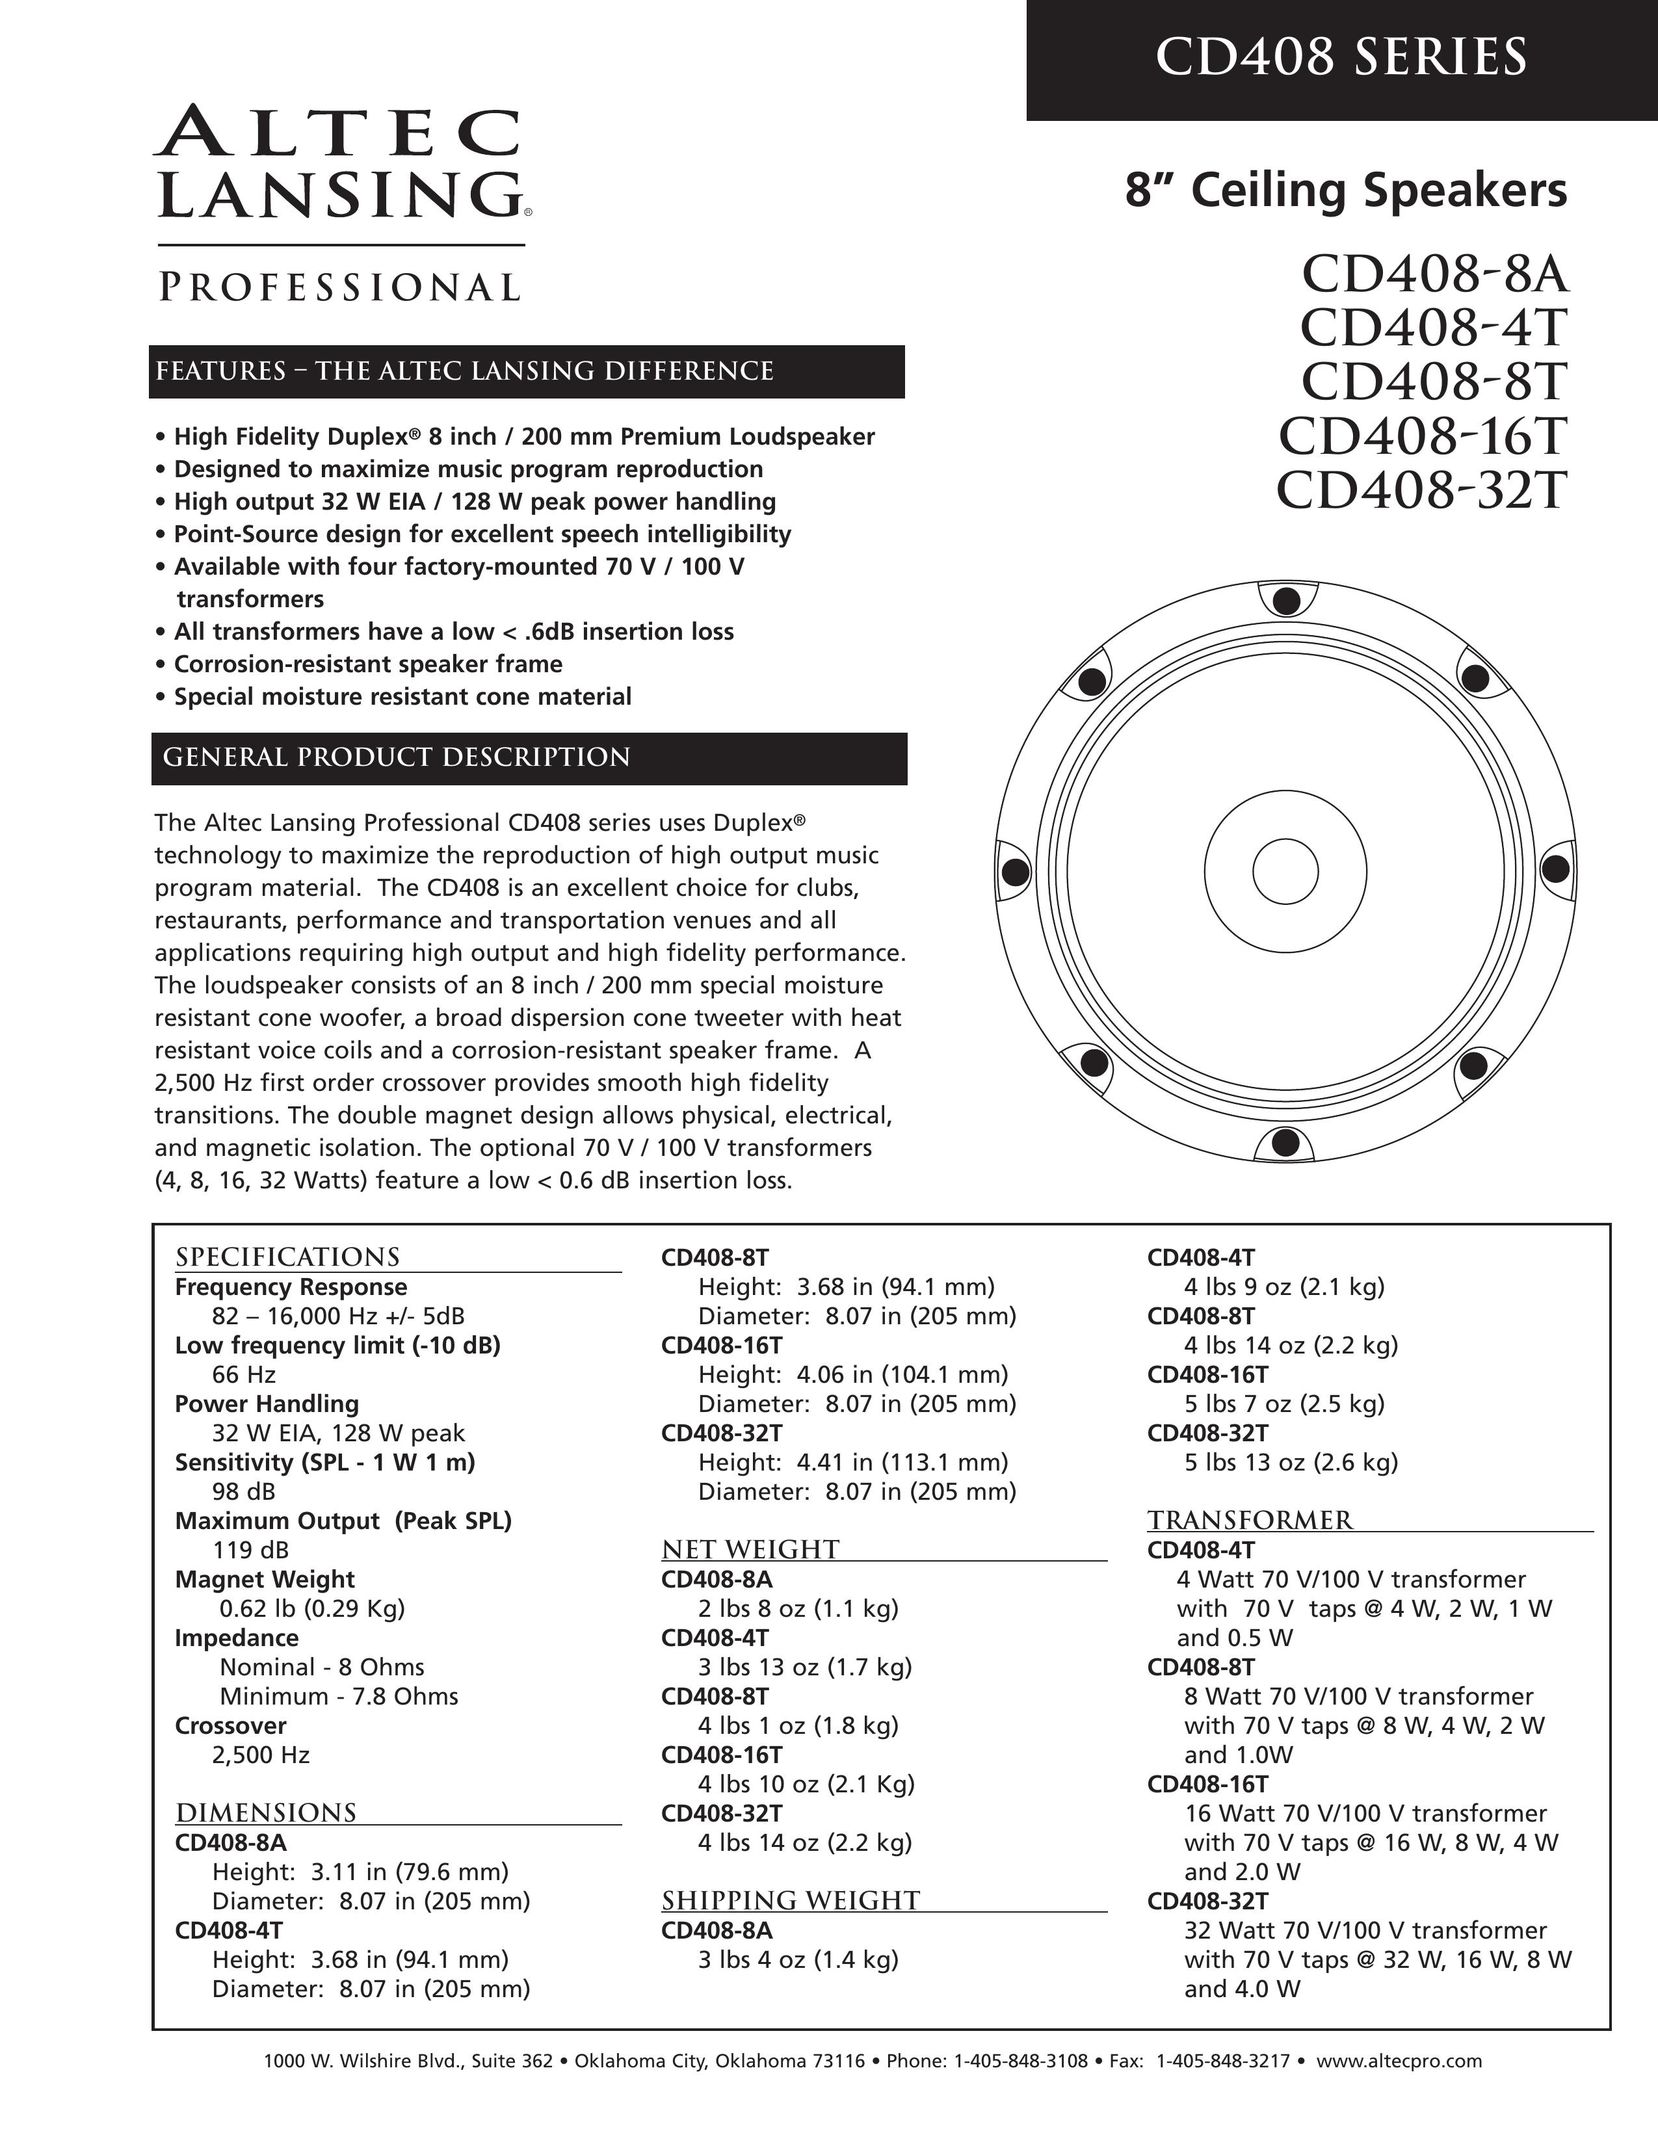 Altec Lansing CD408-4T Speaker User Manual